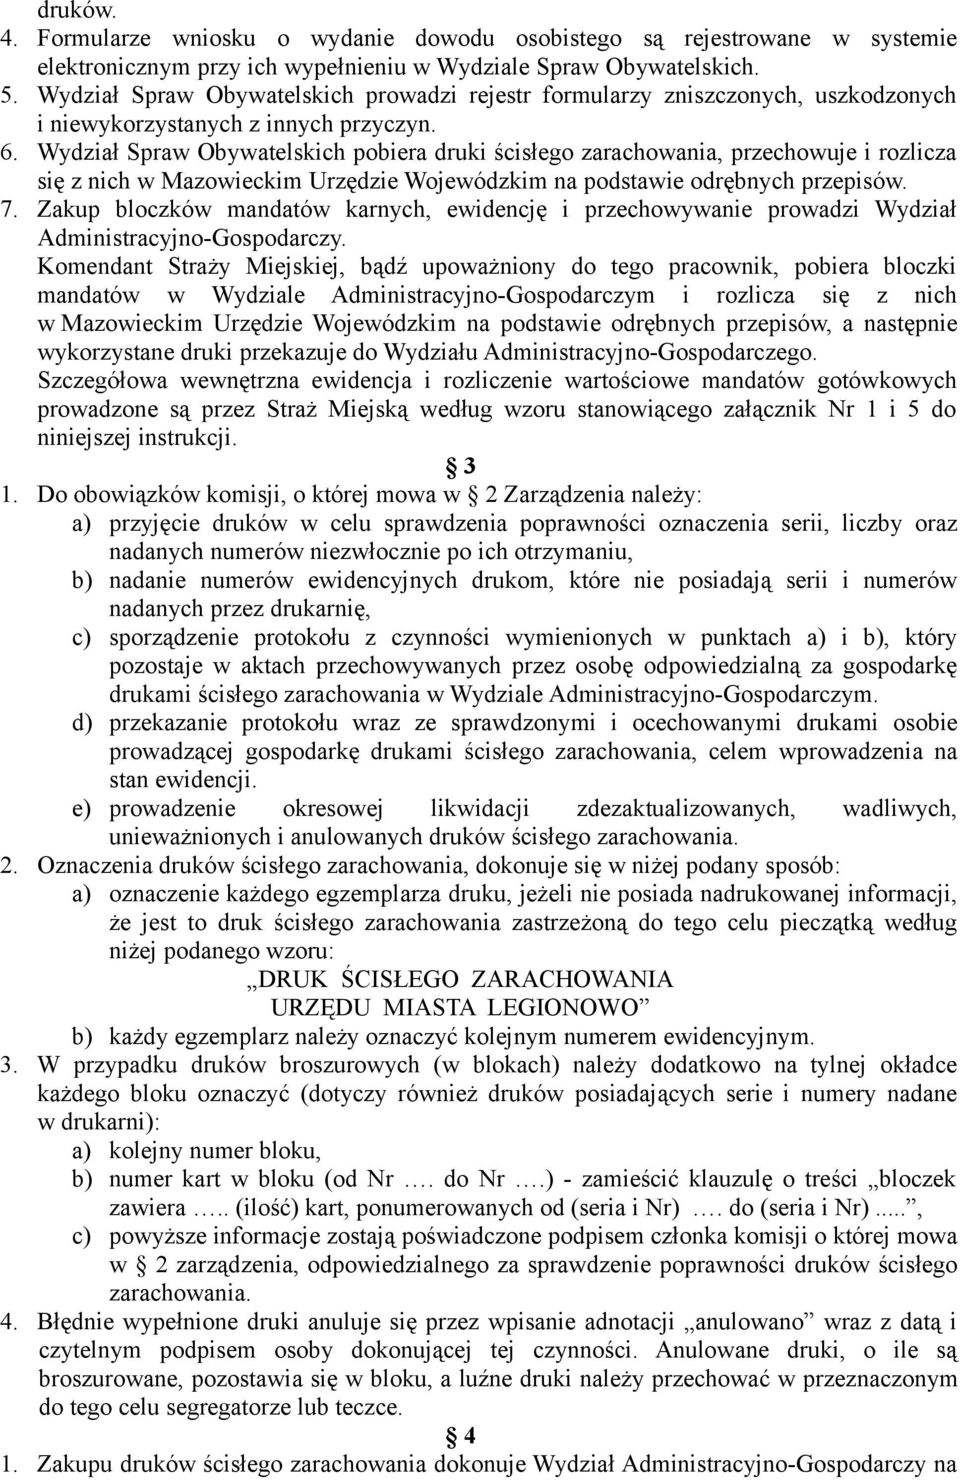 Wydział Spraw Obywatelskich pobiera druki ścisłego zarachowania, przechowuje i rozlicza się z nich w Mazowieckim Urzędzie Wojewódzkim na podstawie odrębnych przepisów. 7.